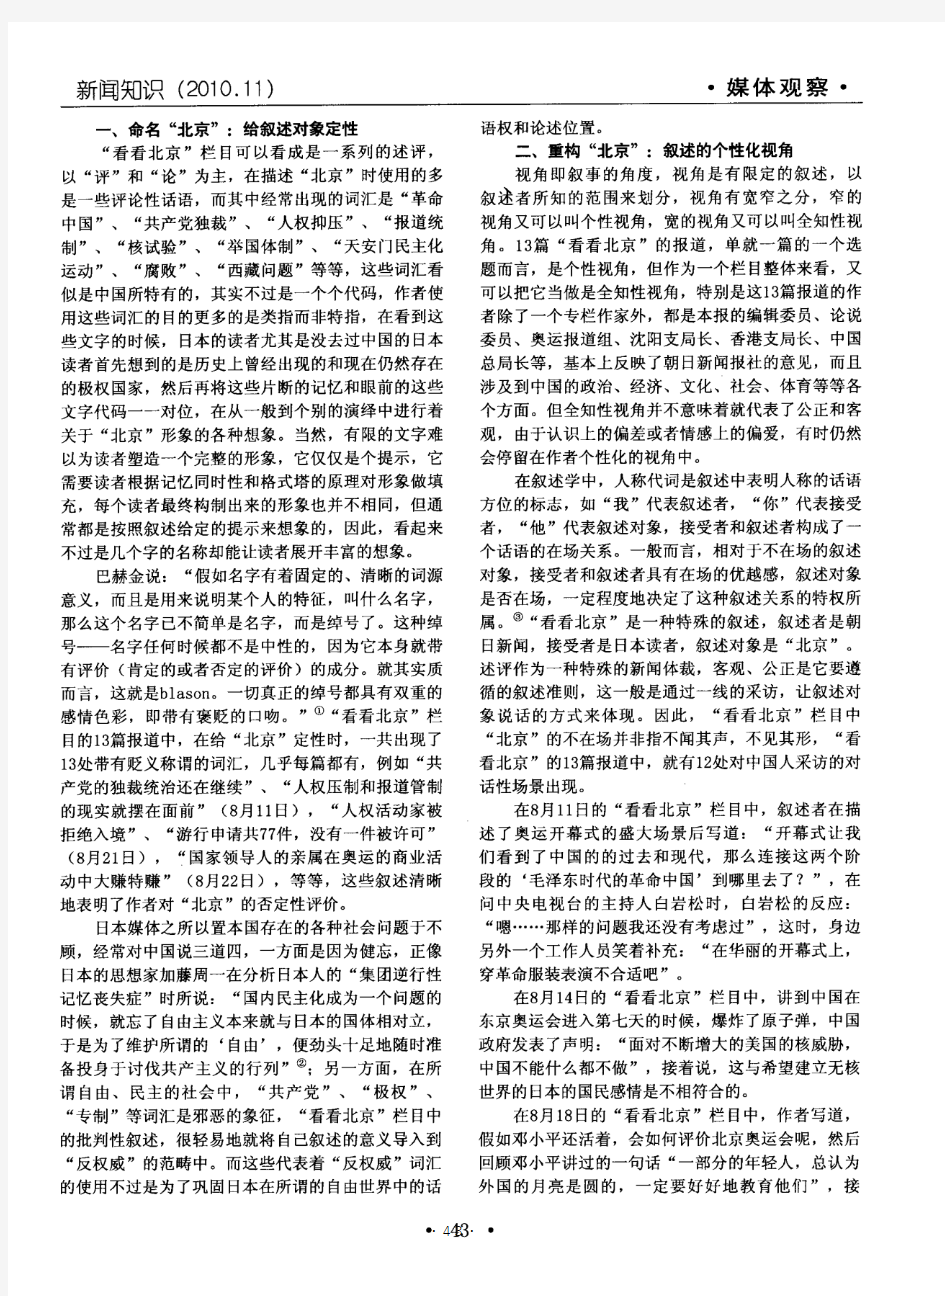 日本媒体有关中国报道的叙述学研究——以北京奥运期间《朝日新闻》“看看北京”专栏为例